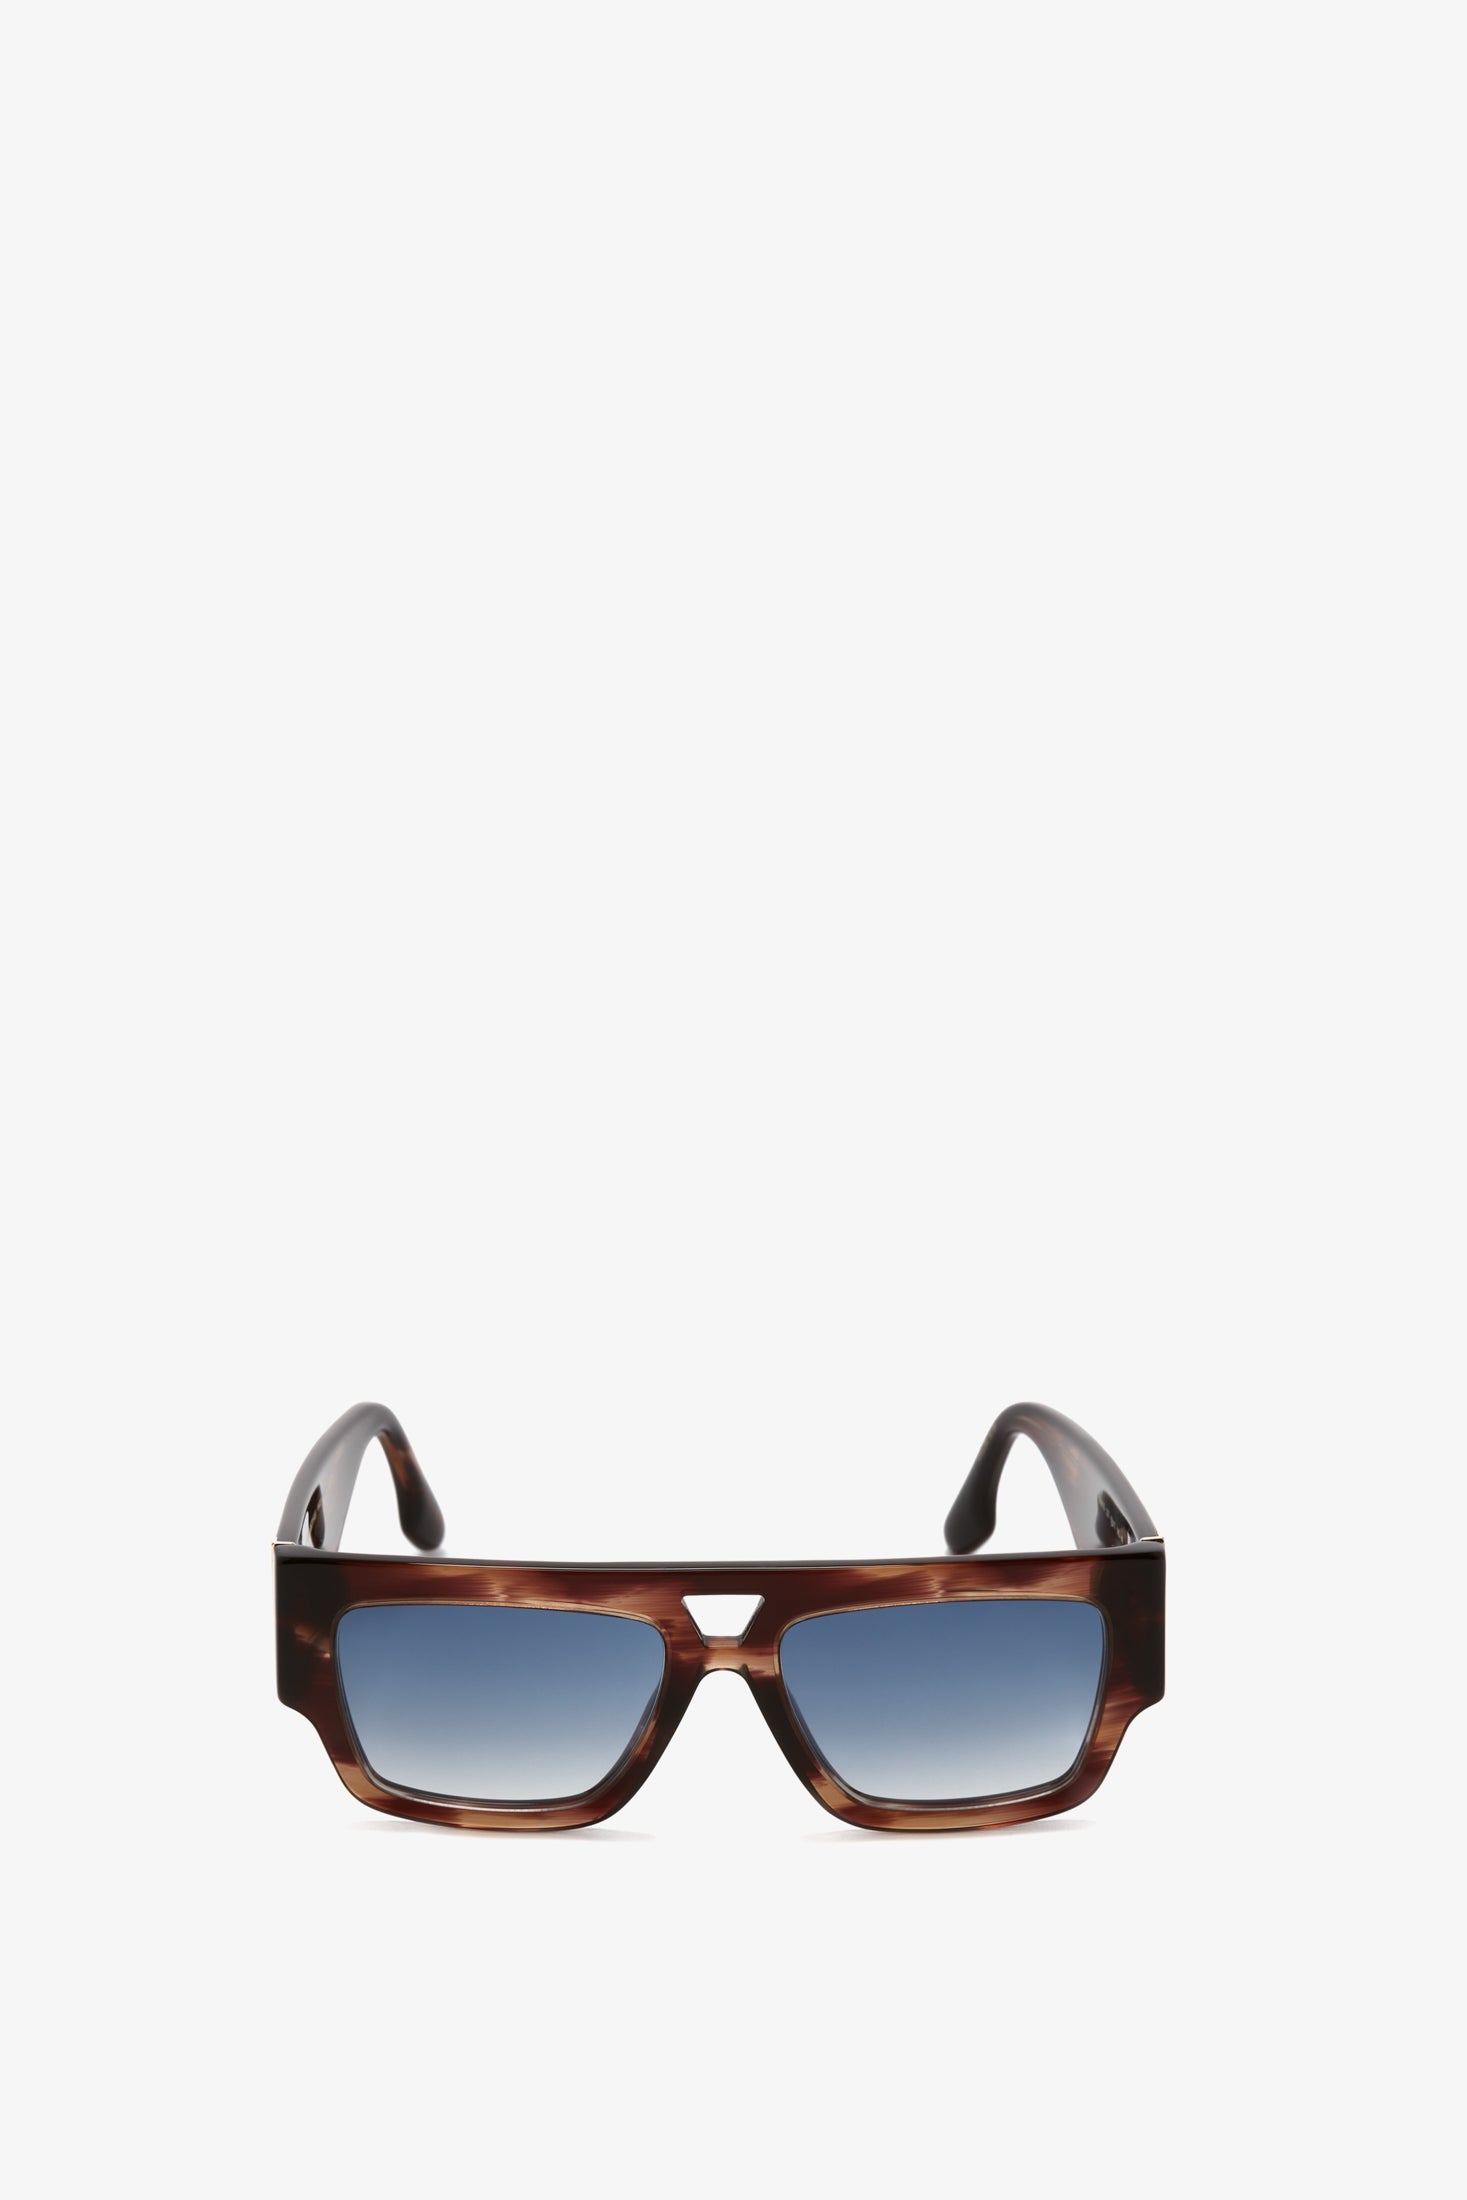 Victoria Beckham V Plaque Frame Sunglasses